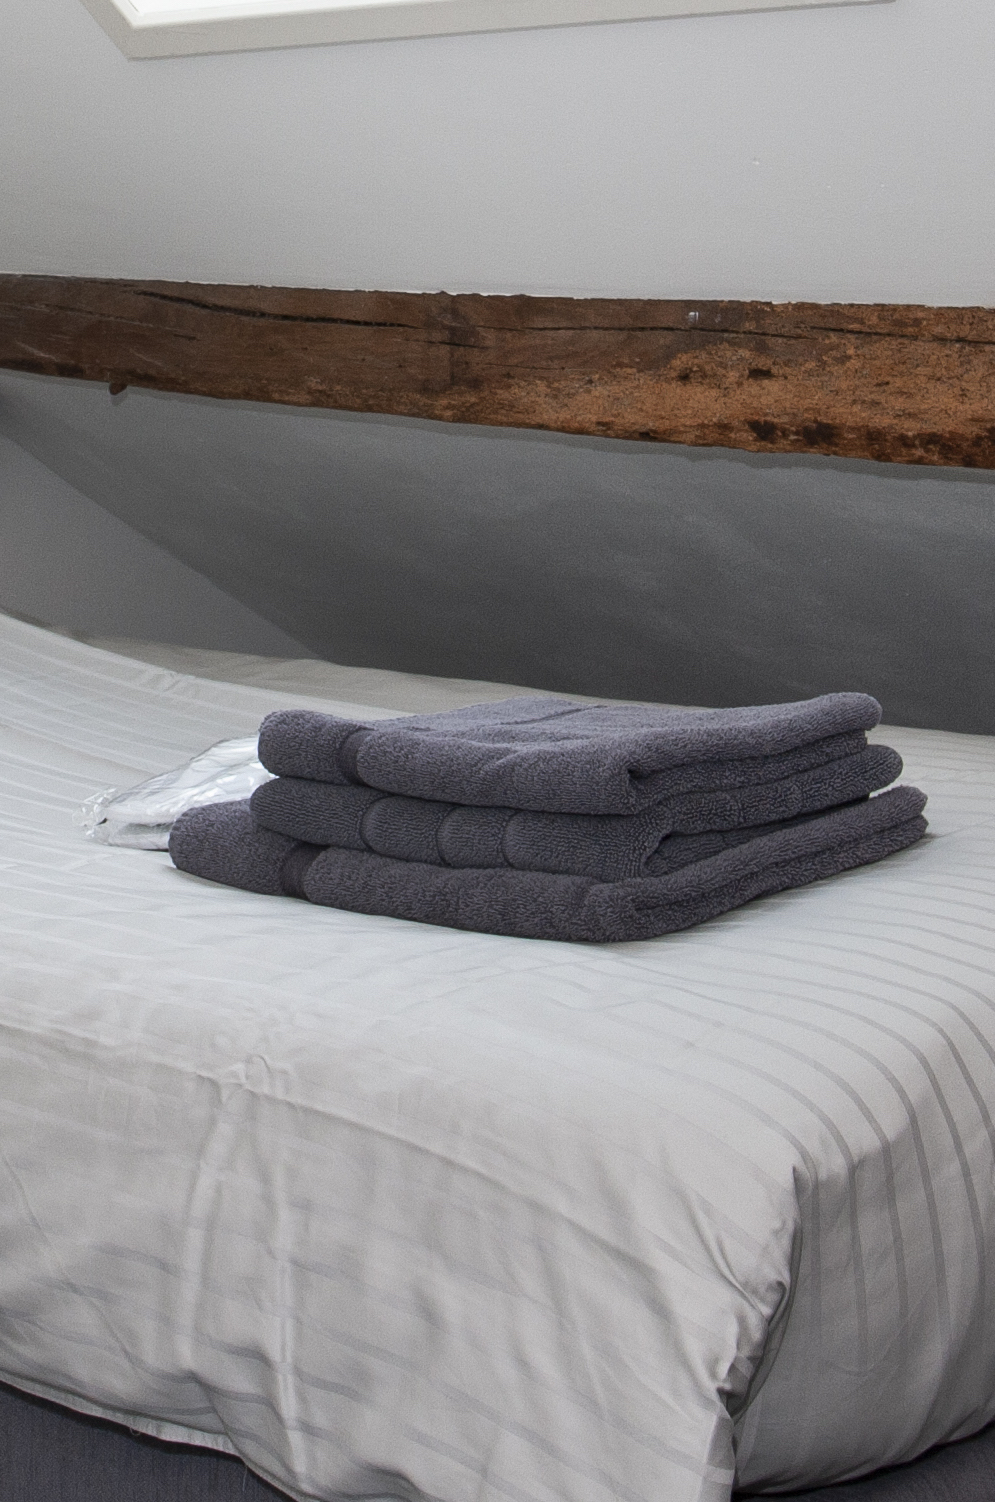 Handdoeken op bed